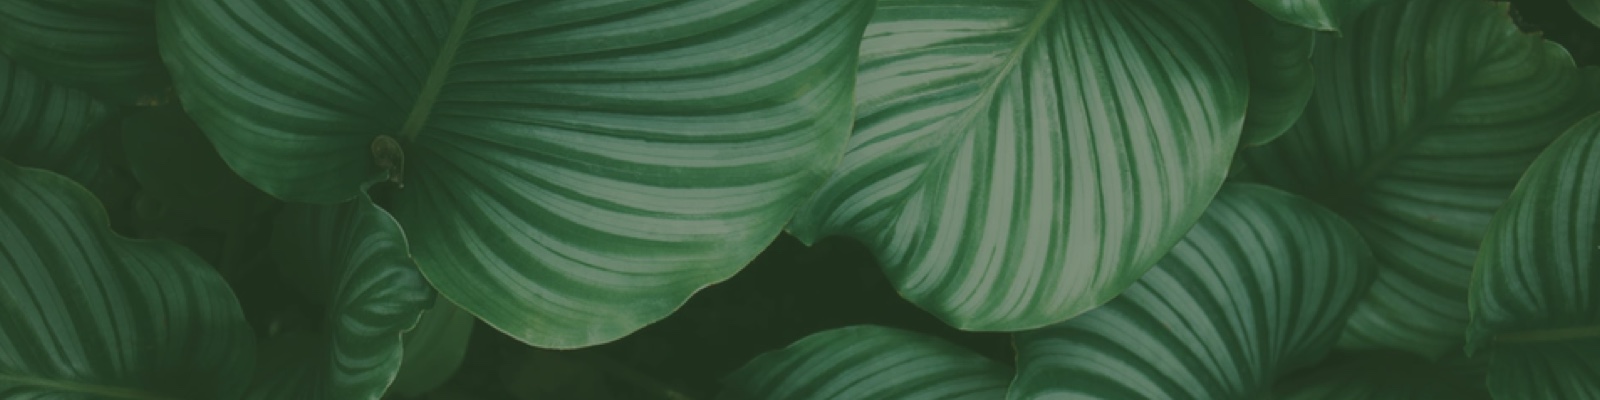 leafy background image